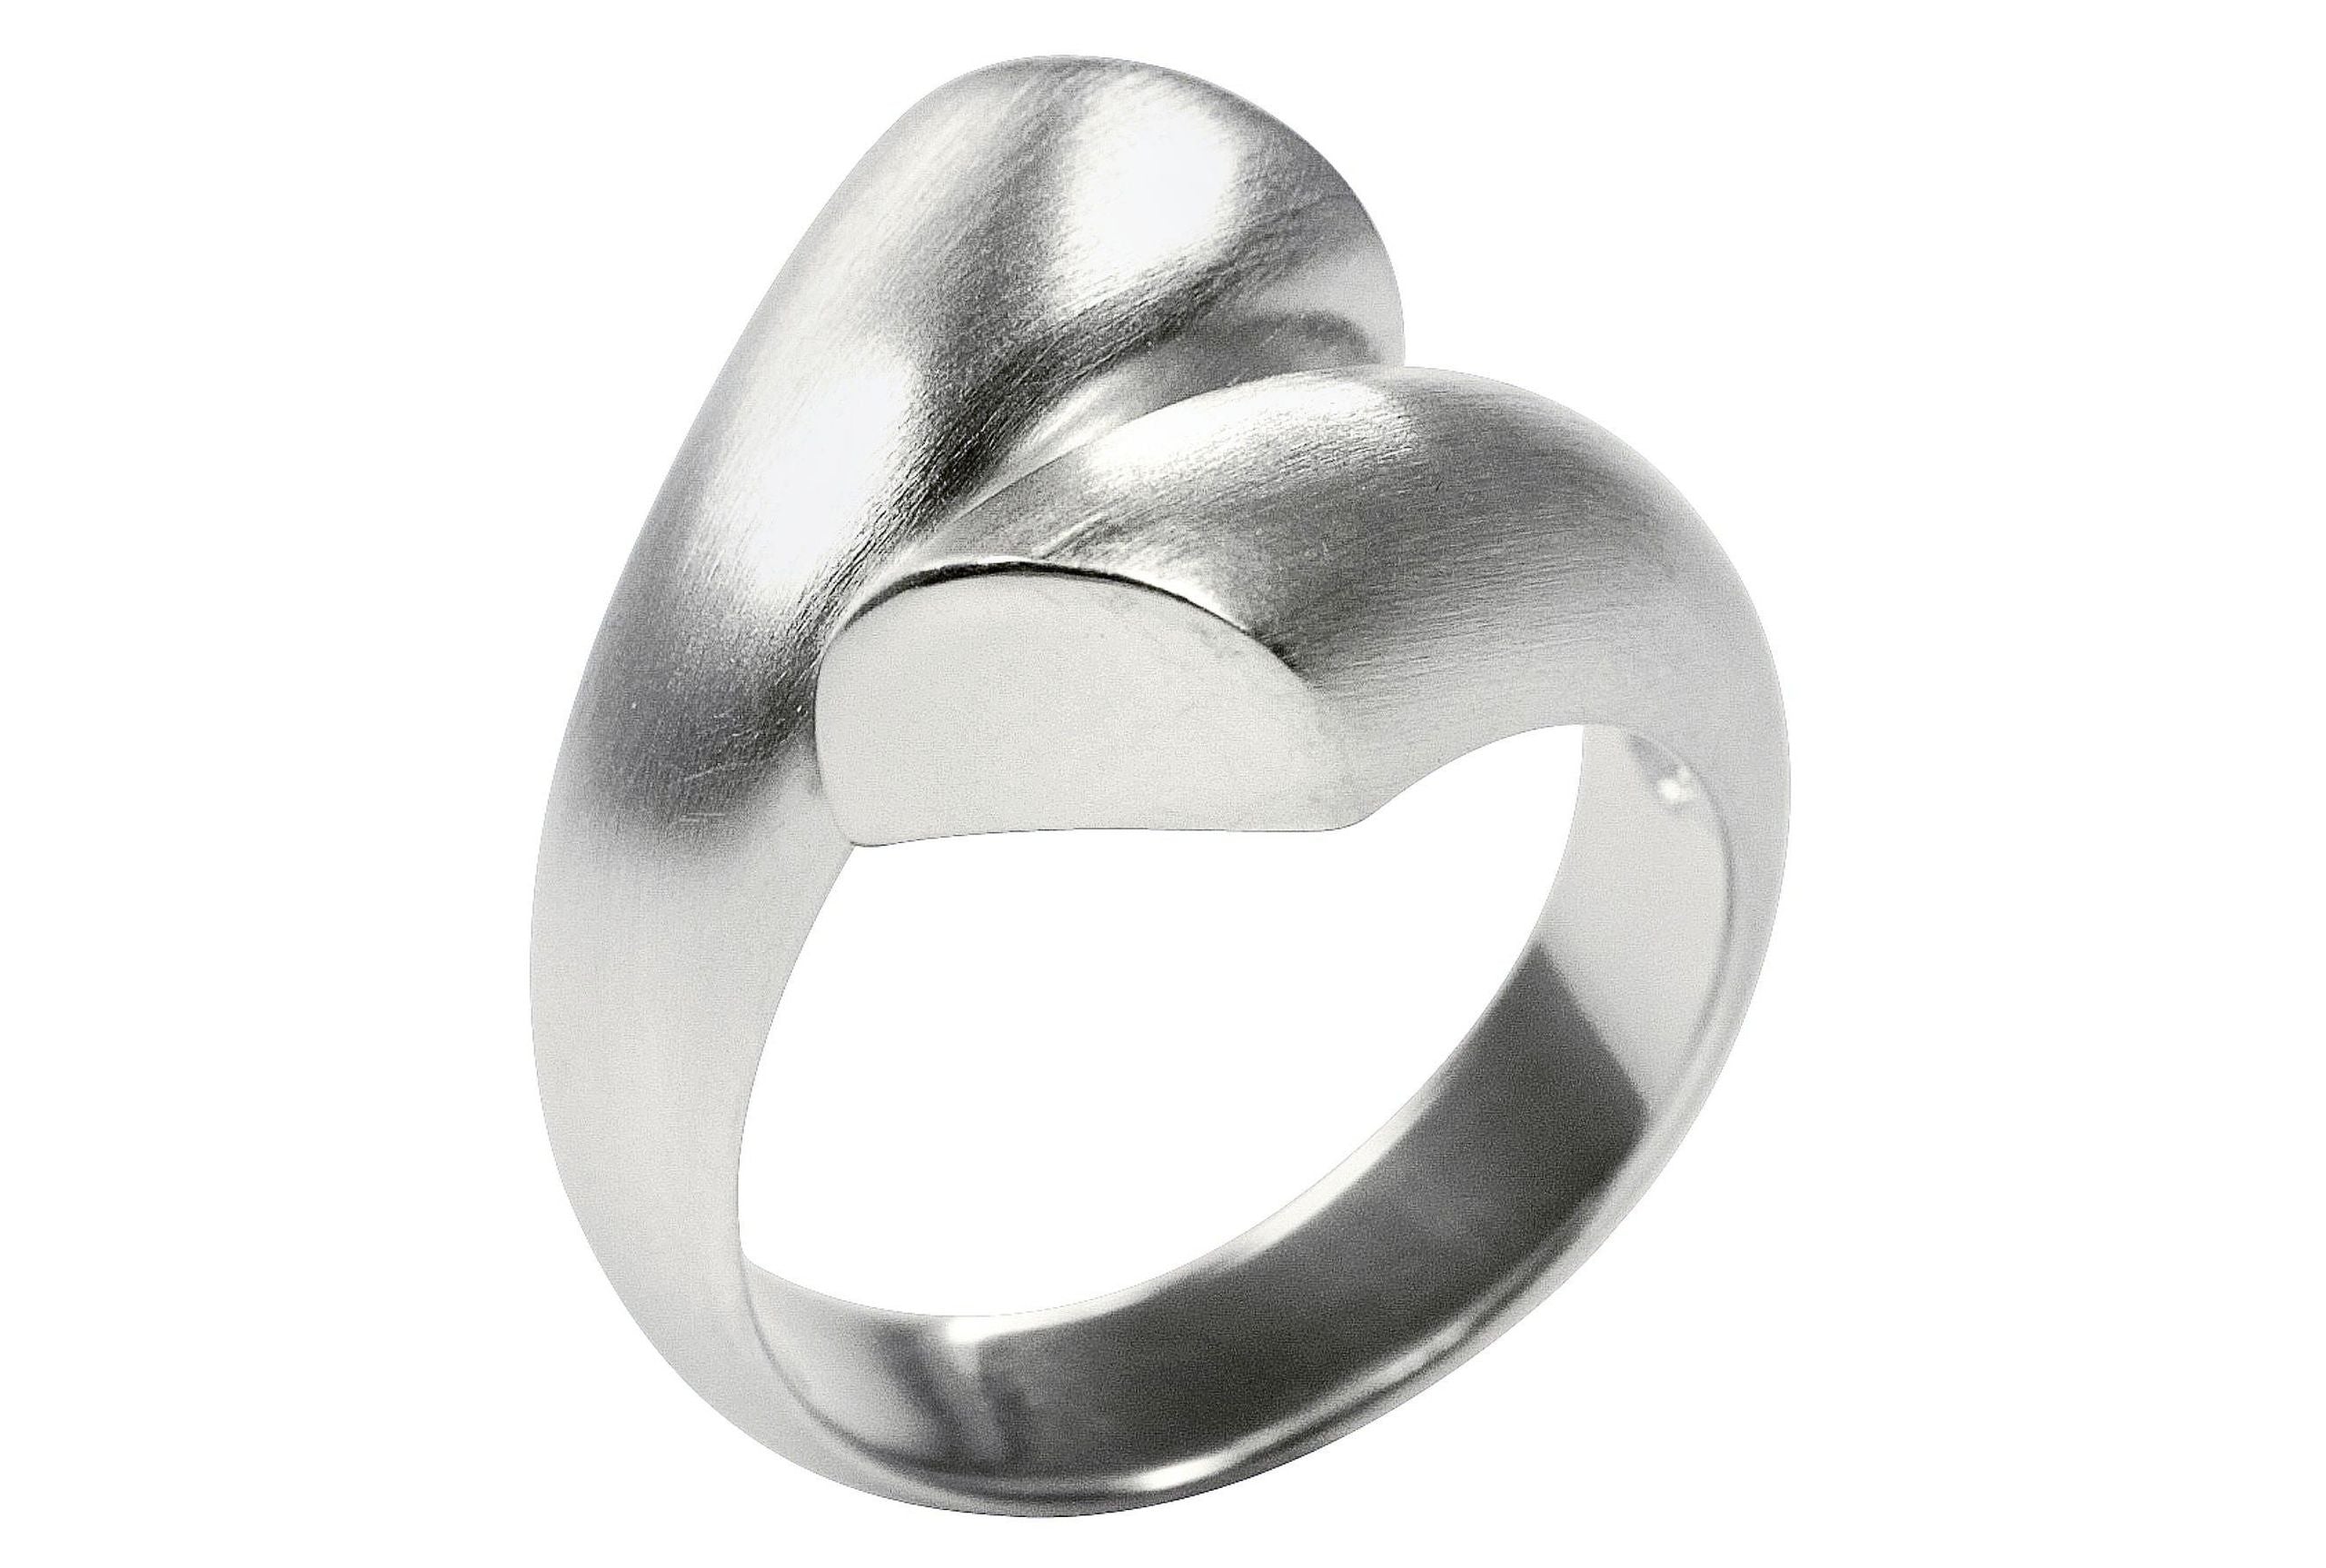 Geschwungener Ring aus Silber, dessen Enden nicht verbunden sind und einander offen gegenüberstehen.